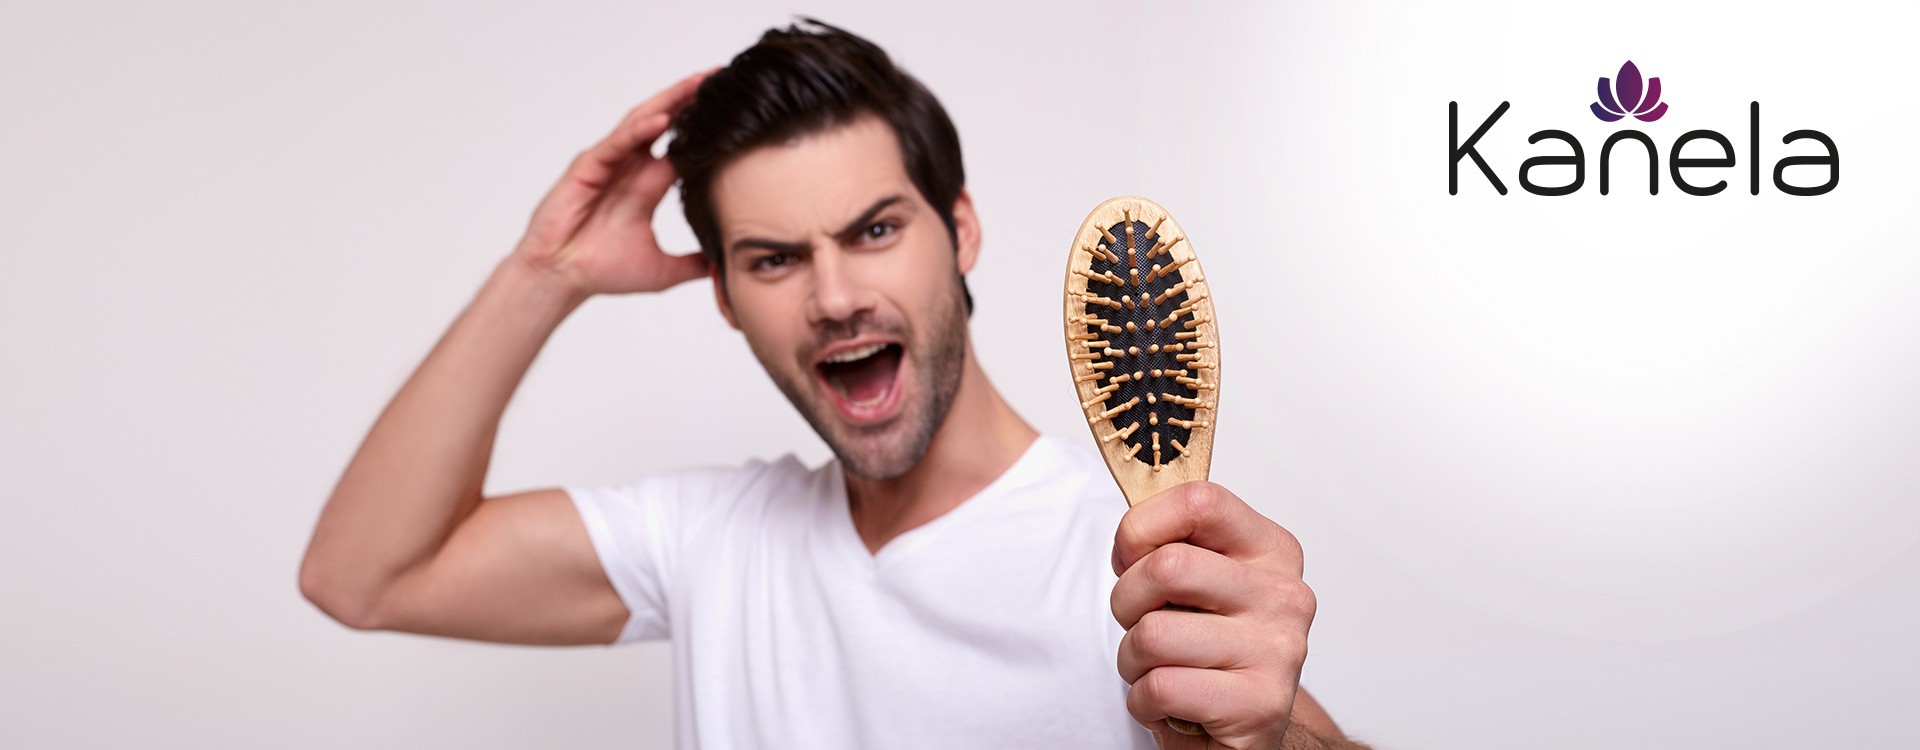 Qu'est-ce qui aide contre la chute des cheveux?